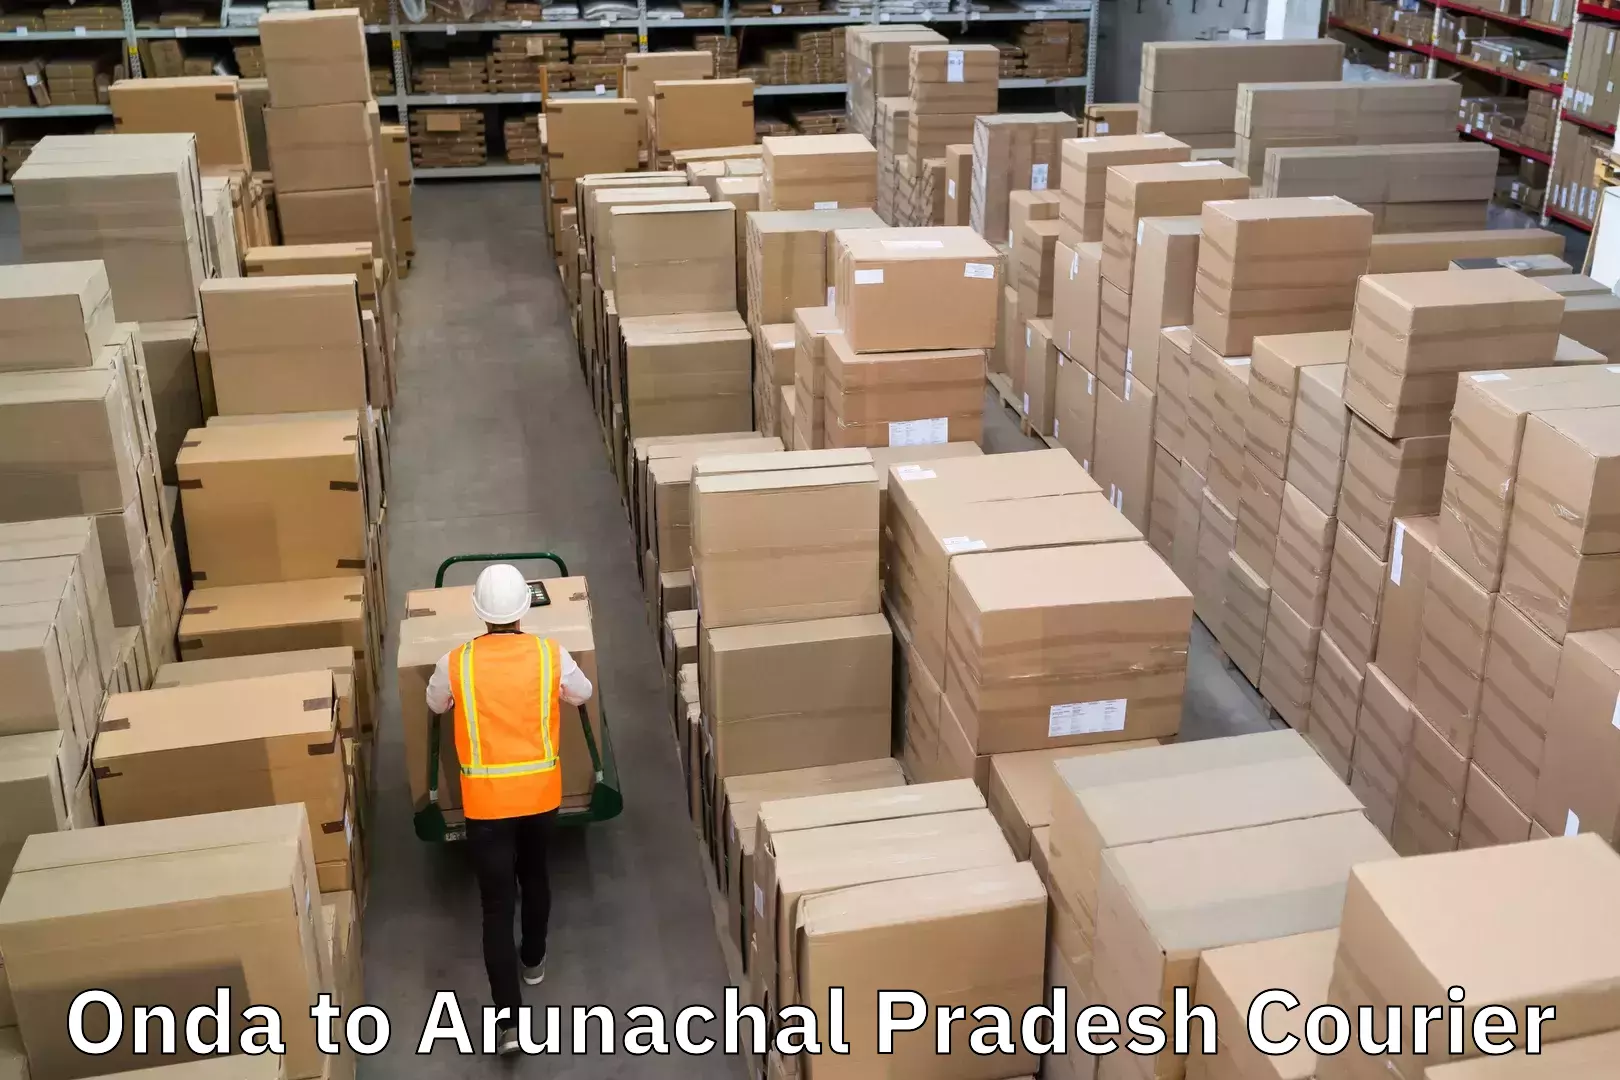 Cargo courier service in Onda to Arunachal Pradesh